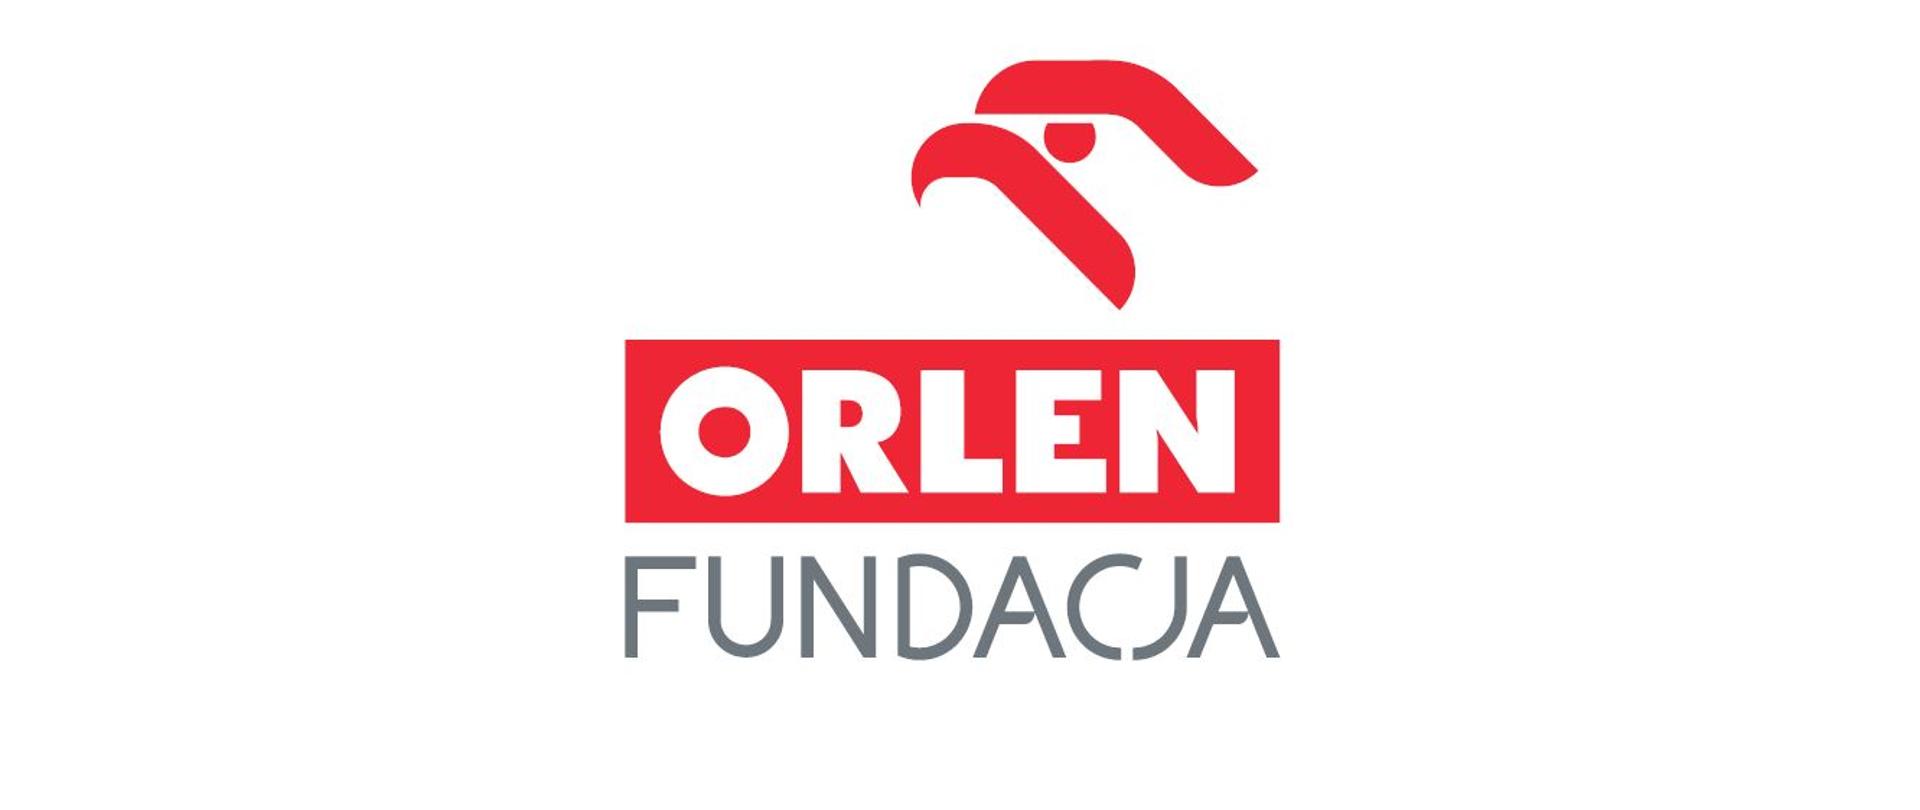 Zdjęcie przedstawia logotyp Fundacji Orlen